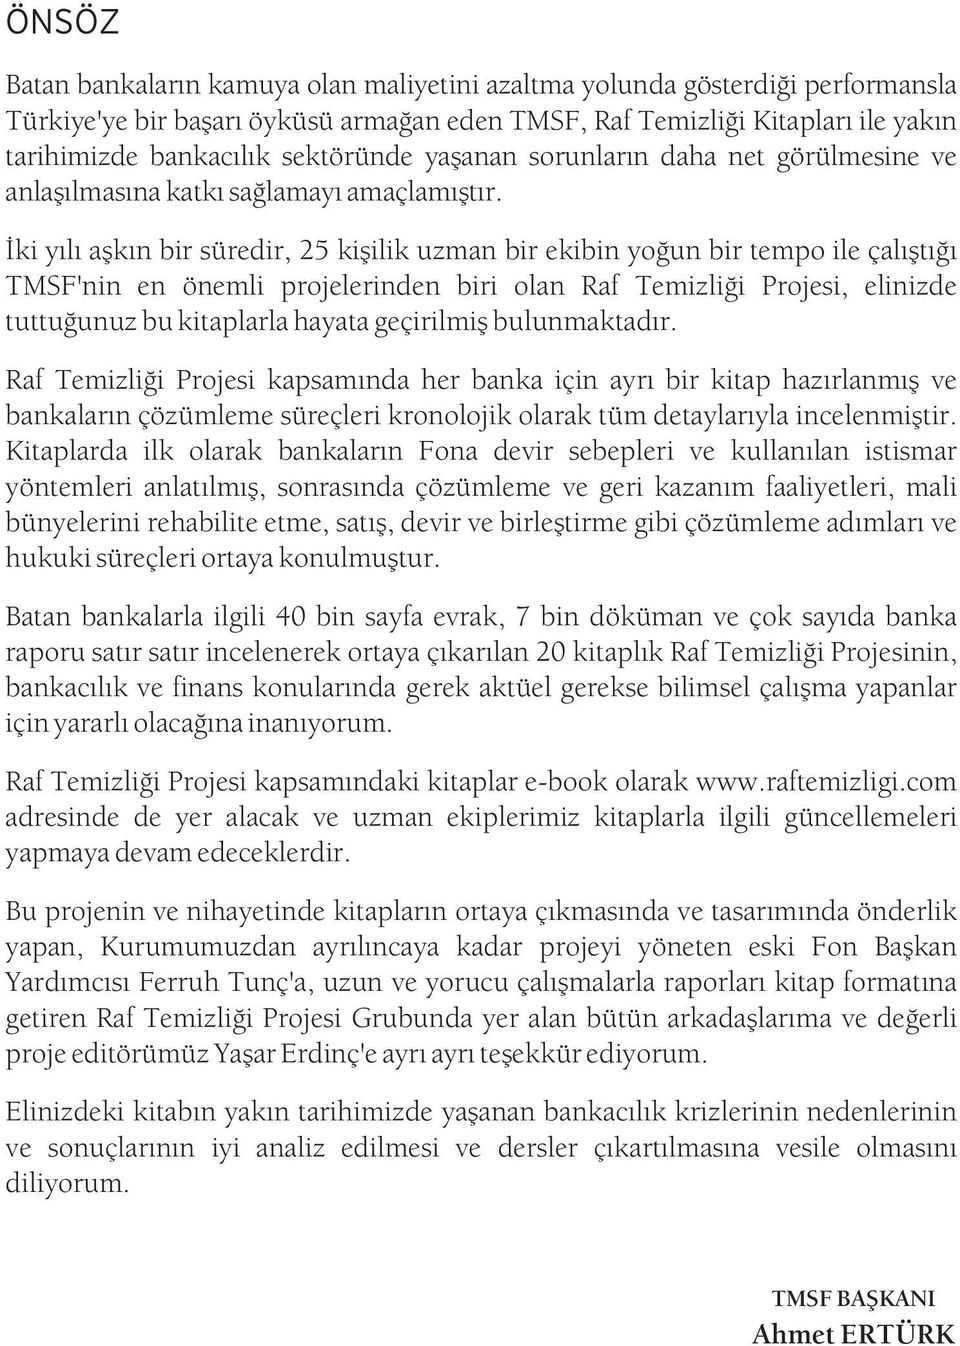 Ýki yýlý aþkýn bir süredir, 25 kiþilik uzman bir ekibin yoðun bir tempo ile çalýþtýðý TMSF'nin en önemli projelerinden biri olan Raf Temizliði Projesi, elinizde tuttuðunuz bu kitaplarla hayata